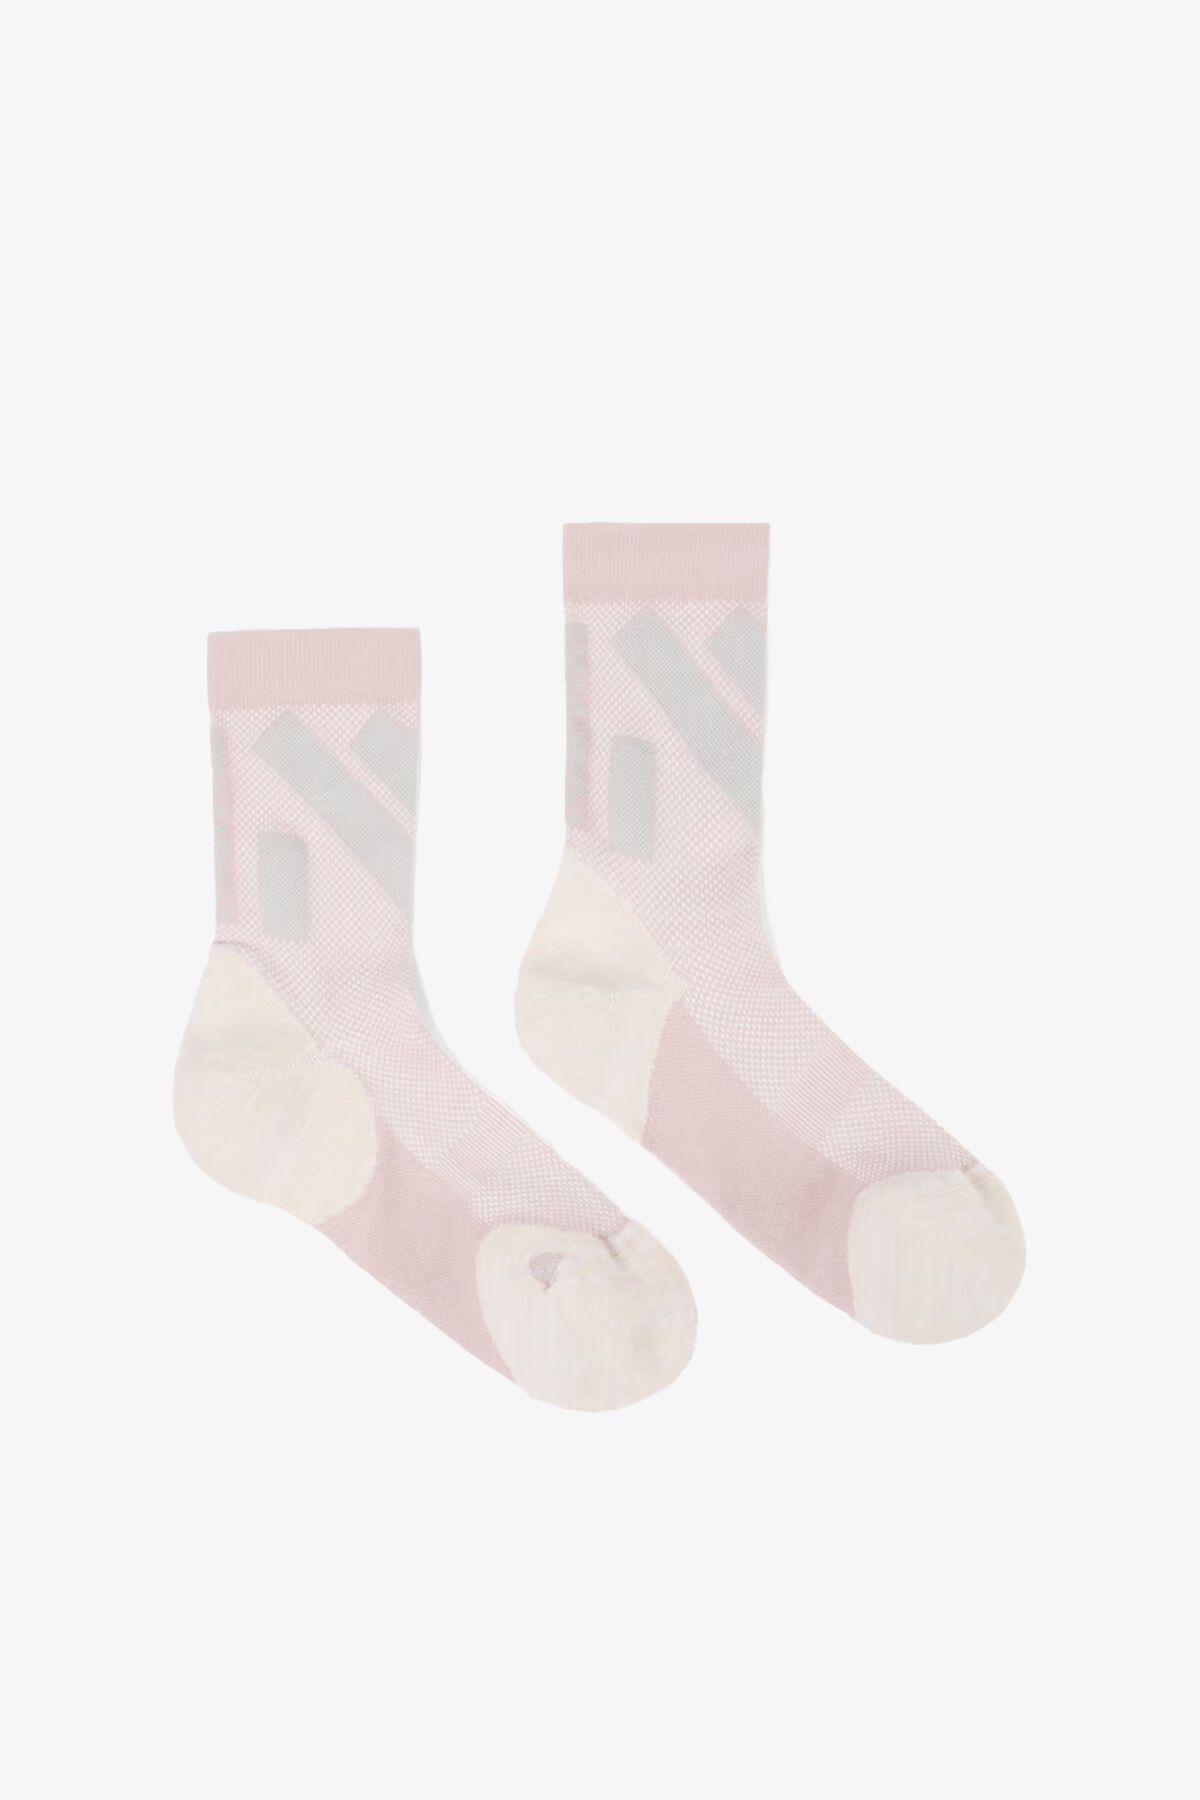 NNormal Race Low Cut Unisex Pembe Çorap N1ARS03-002